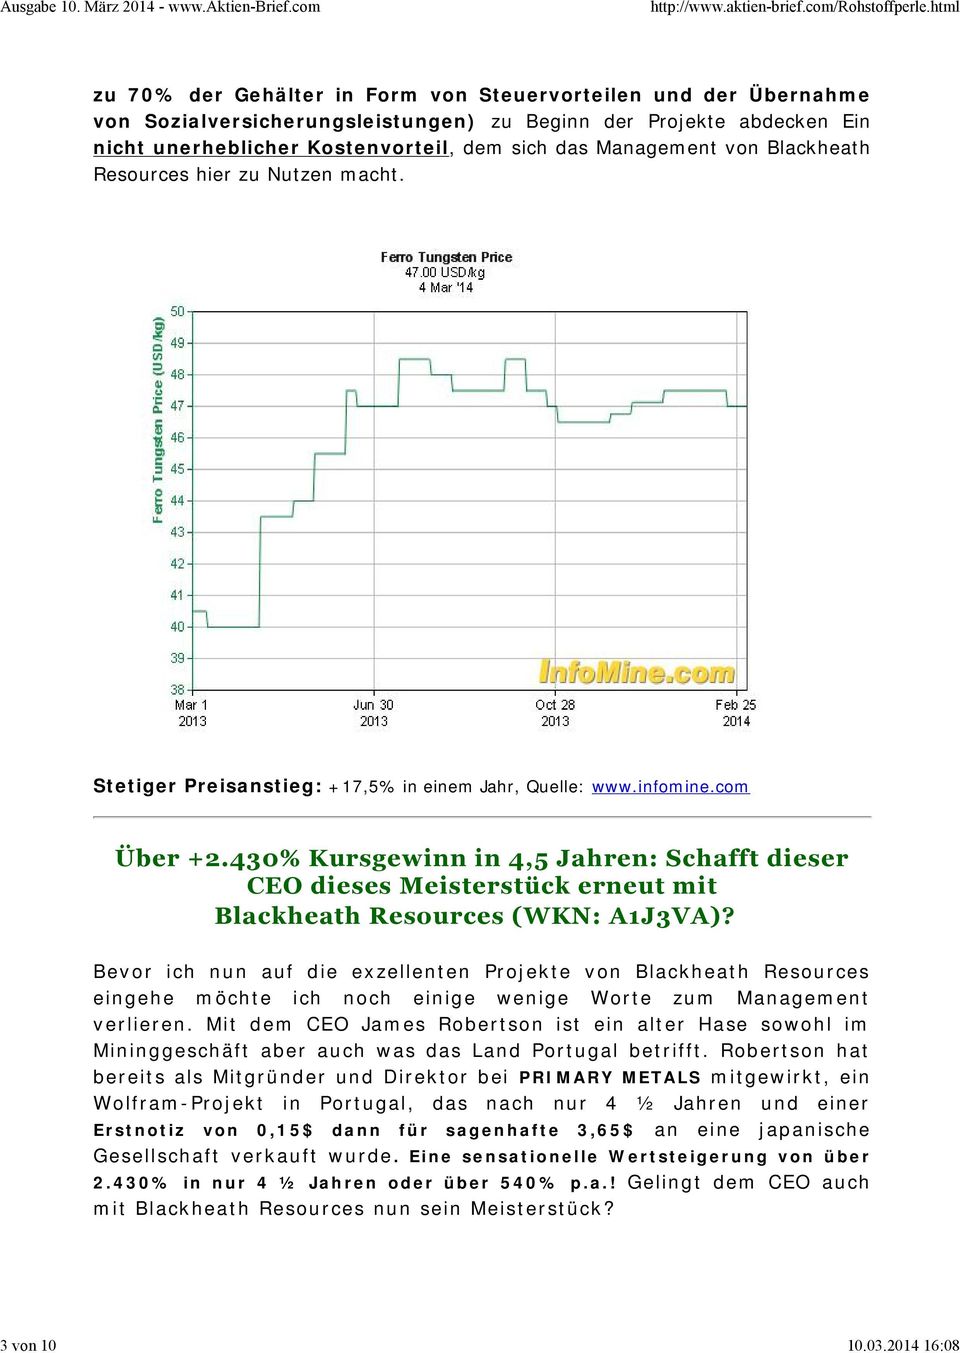 Management von Blackheath Resources hier zu Nutzen macht. Stetiger Preisanstieg: +17,5% in einem Jahr, Quelle: www.infomine.com Über +2.